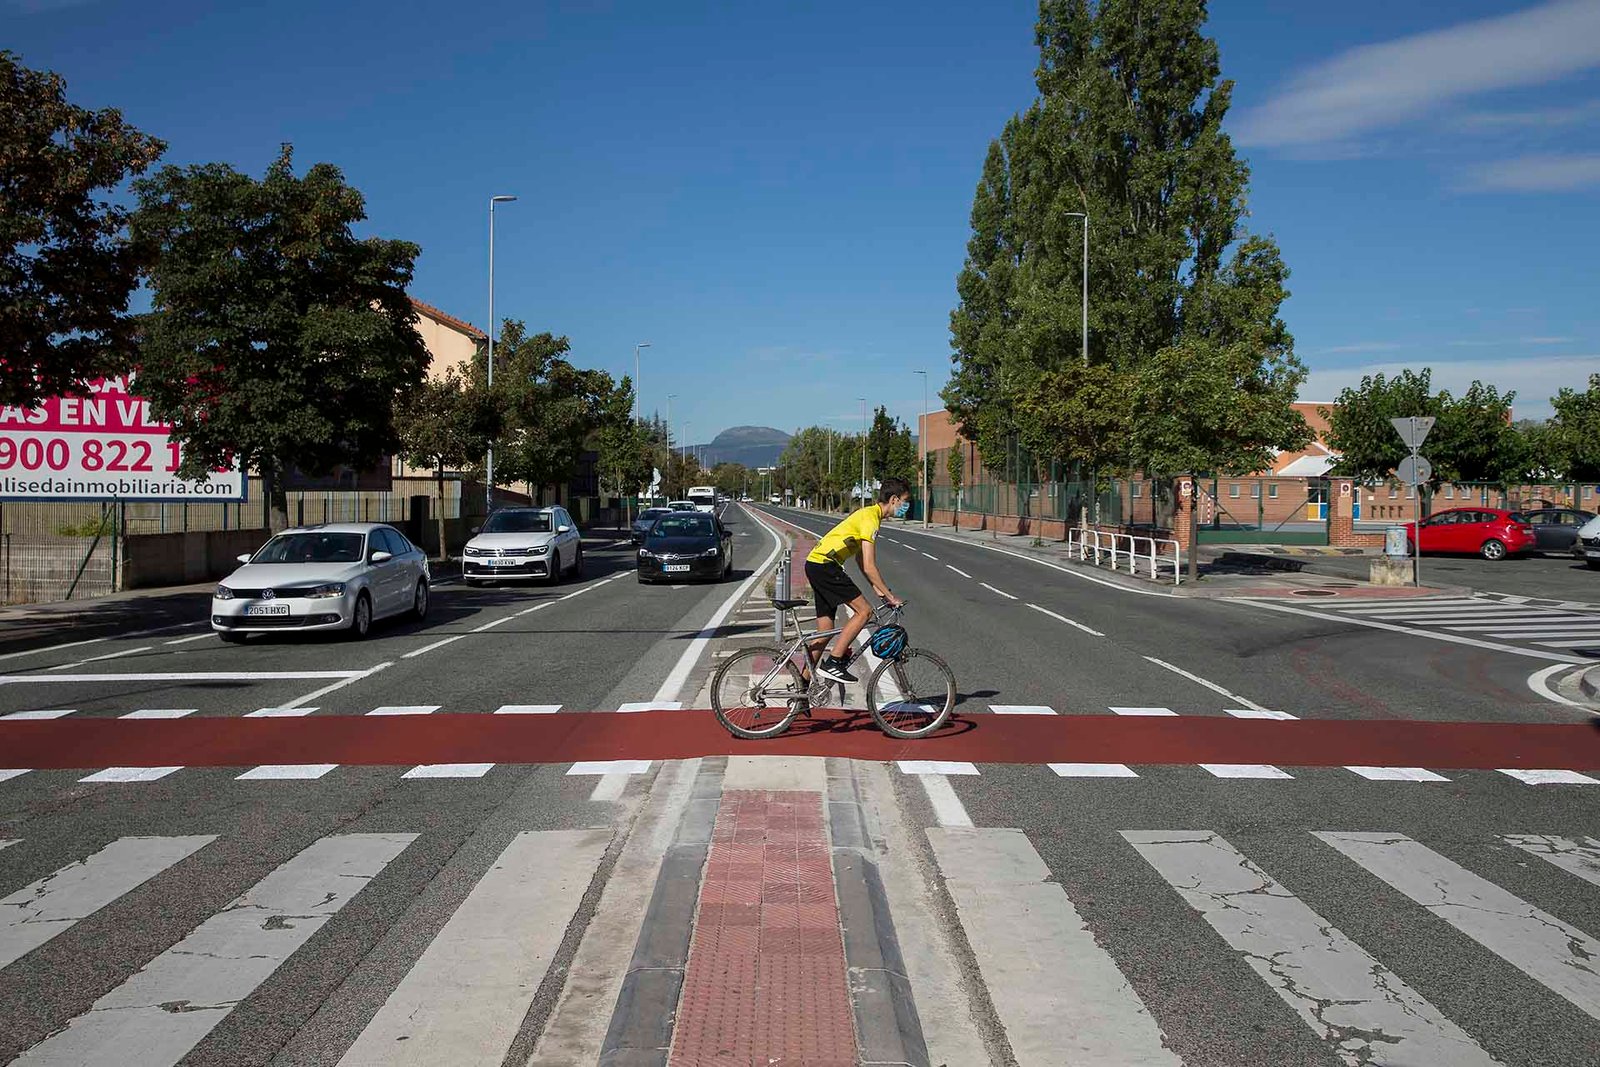 Pamplona obtiene 6,3 millones de euros de los fondos europeos Next Generation EU para el desarrollo de proyectos de movilidad sostenible en la ciudad